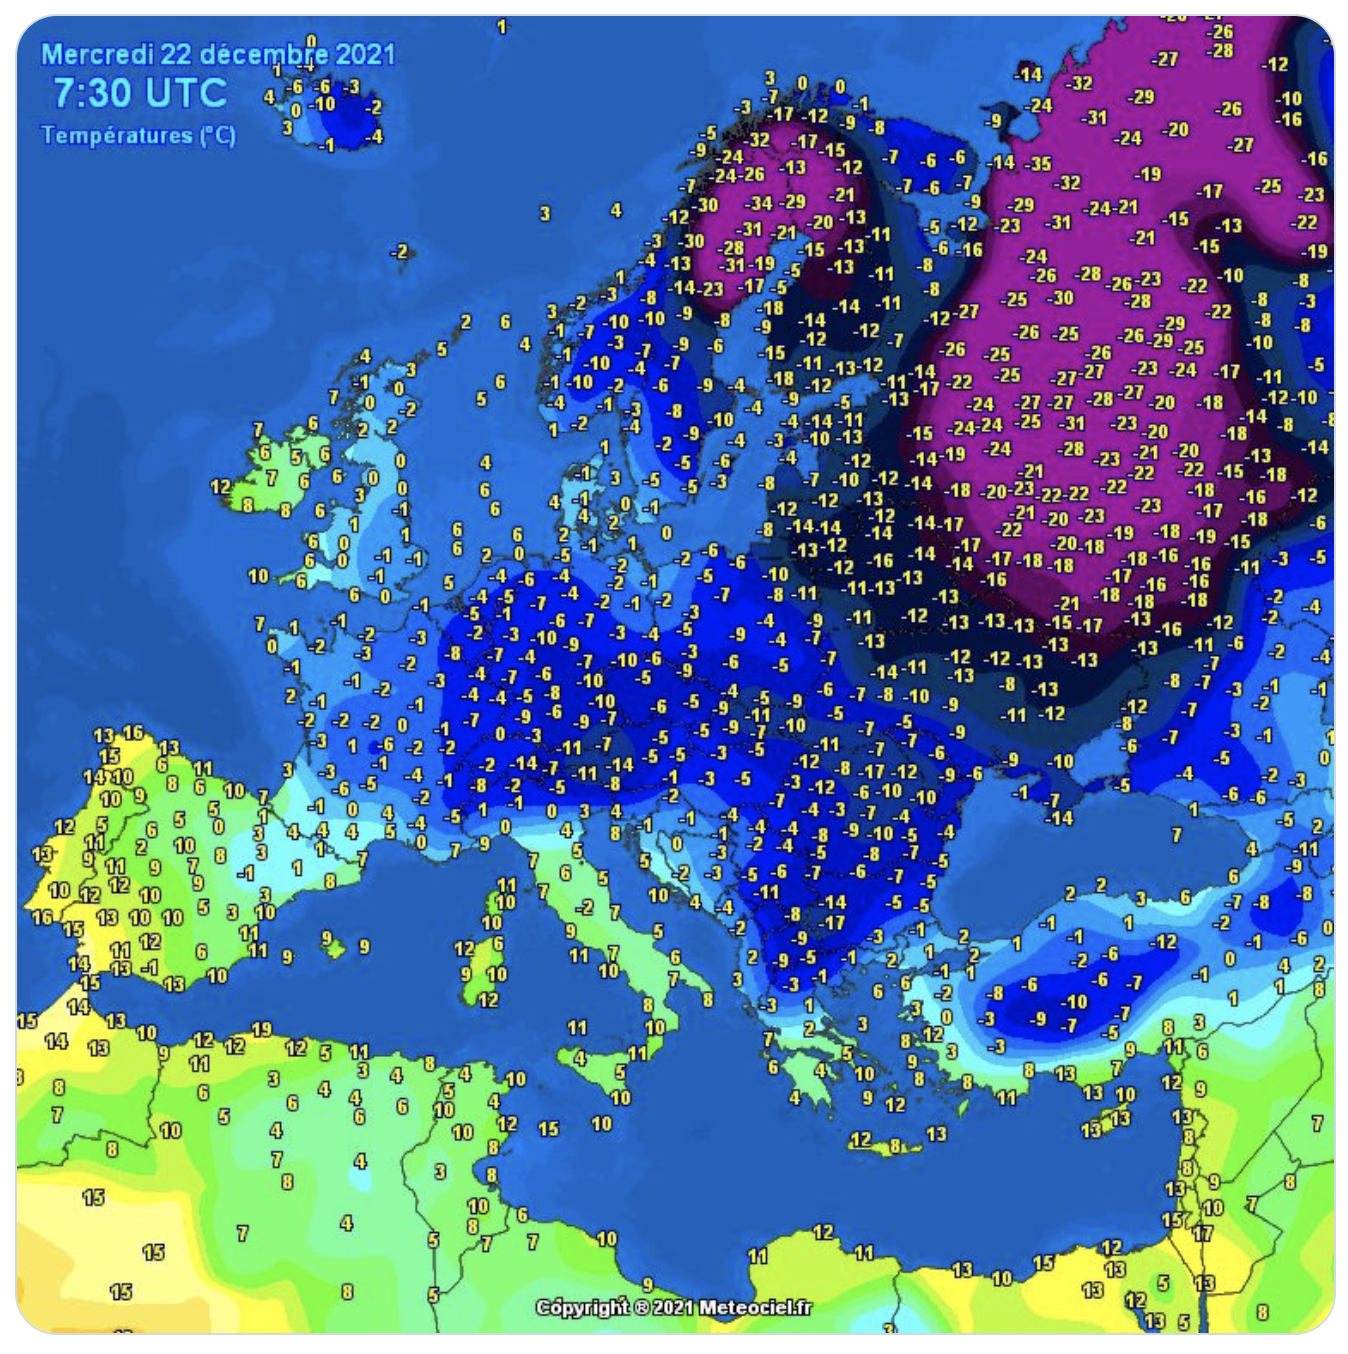 La Russie réduit l’approvisionnement en gaz de l’Europe pendant que les températures baissent (surtout en Russie) et que l’ambiance se refroidit entre Berlin et Moscou